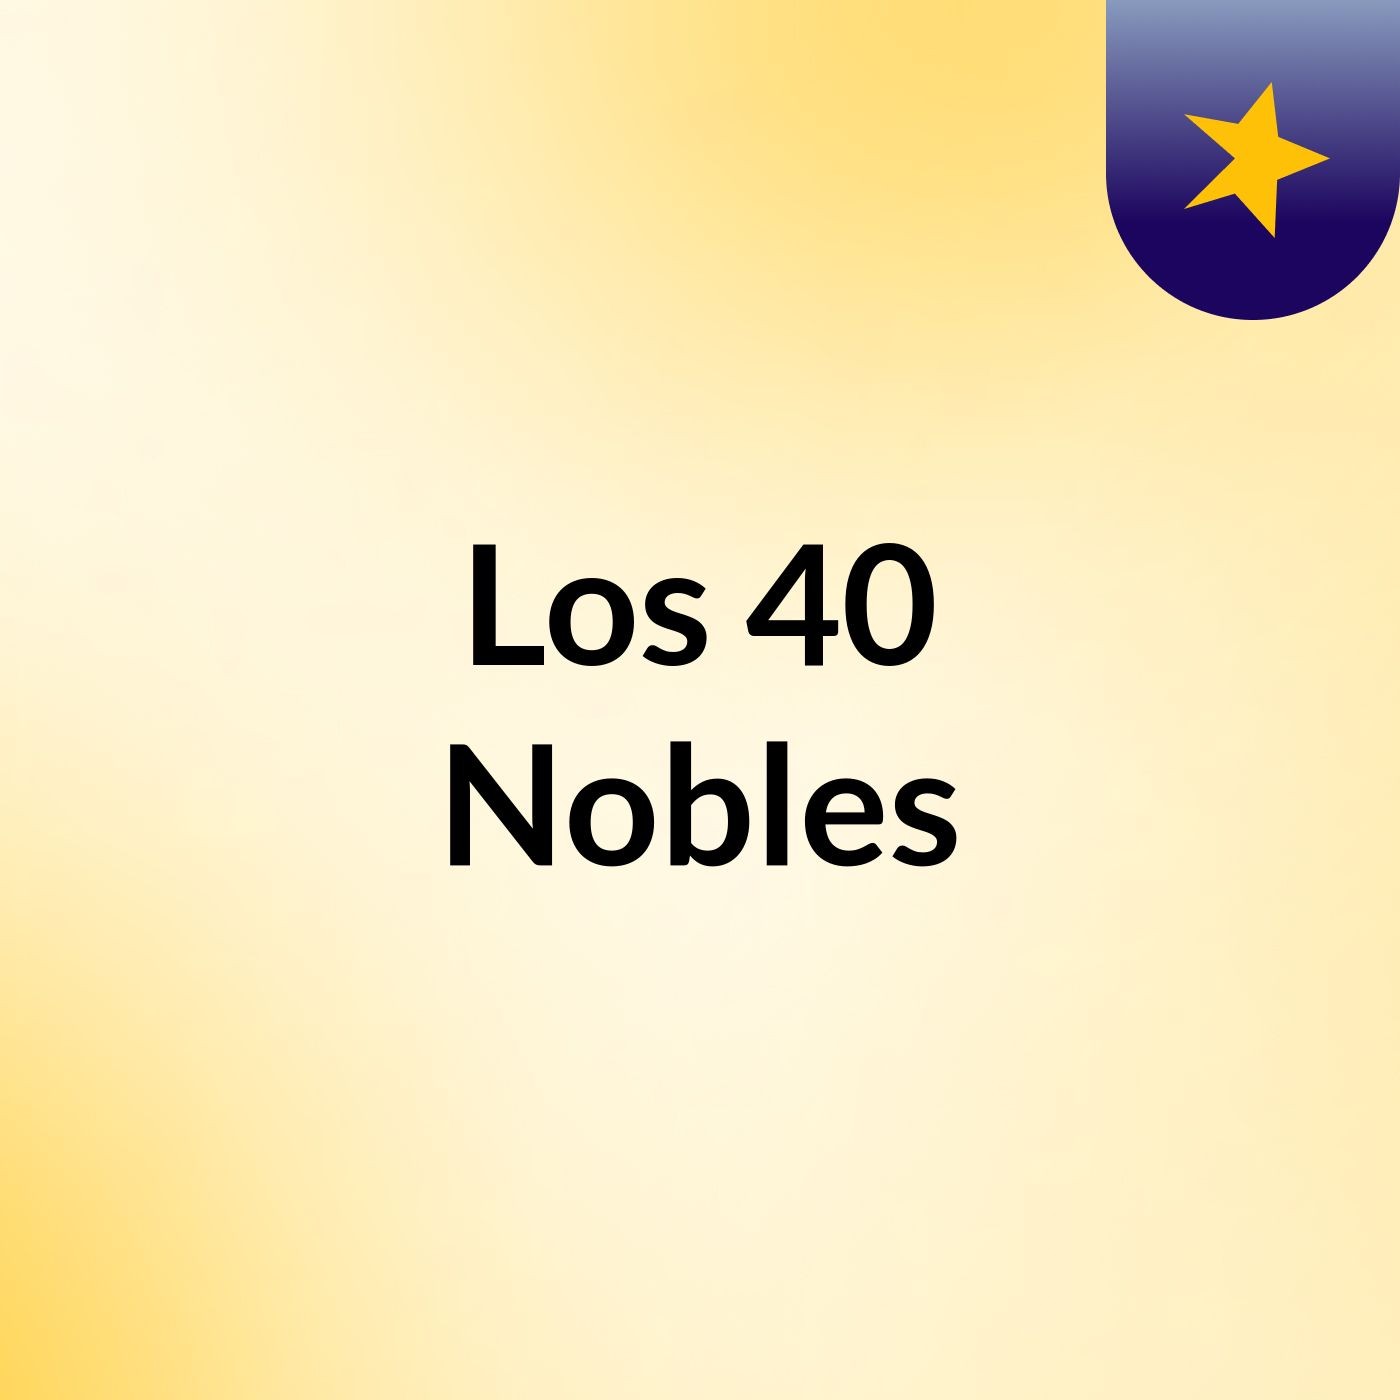 Los 40 Nobles